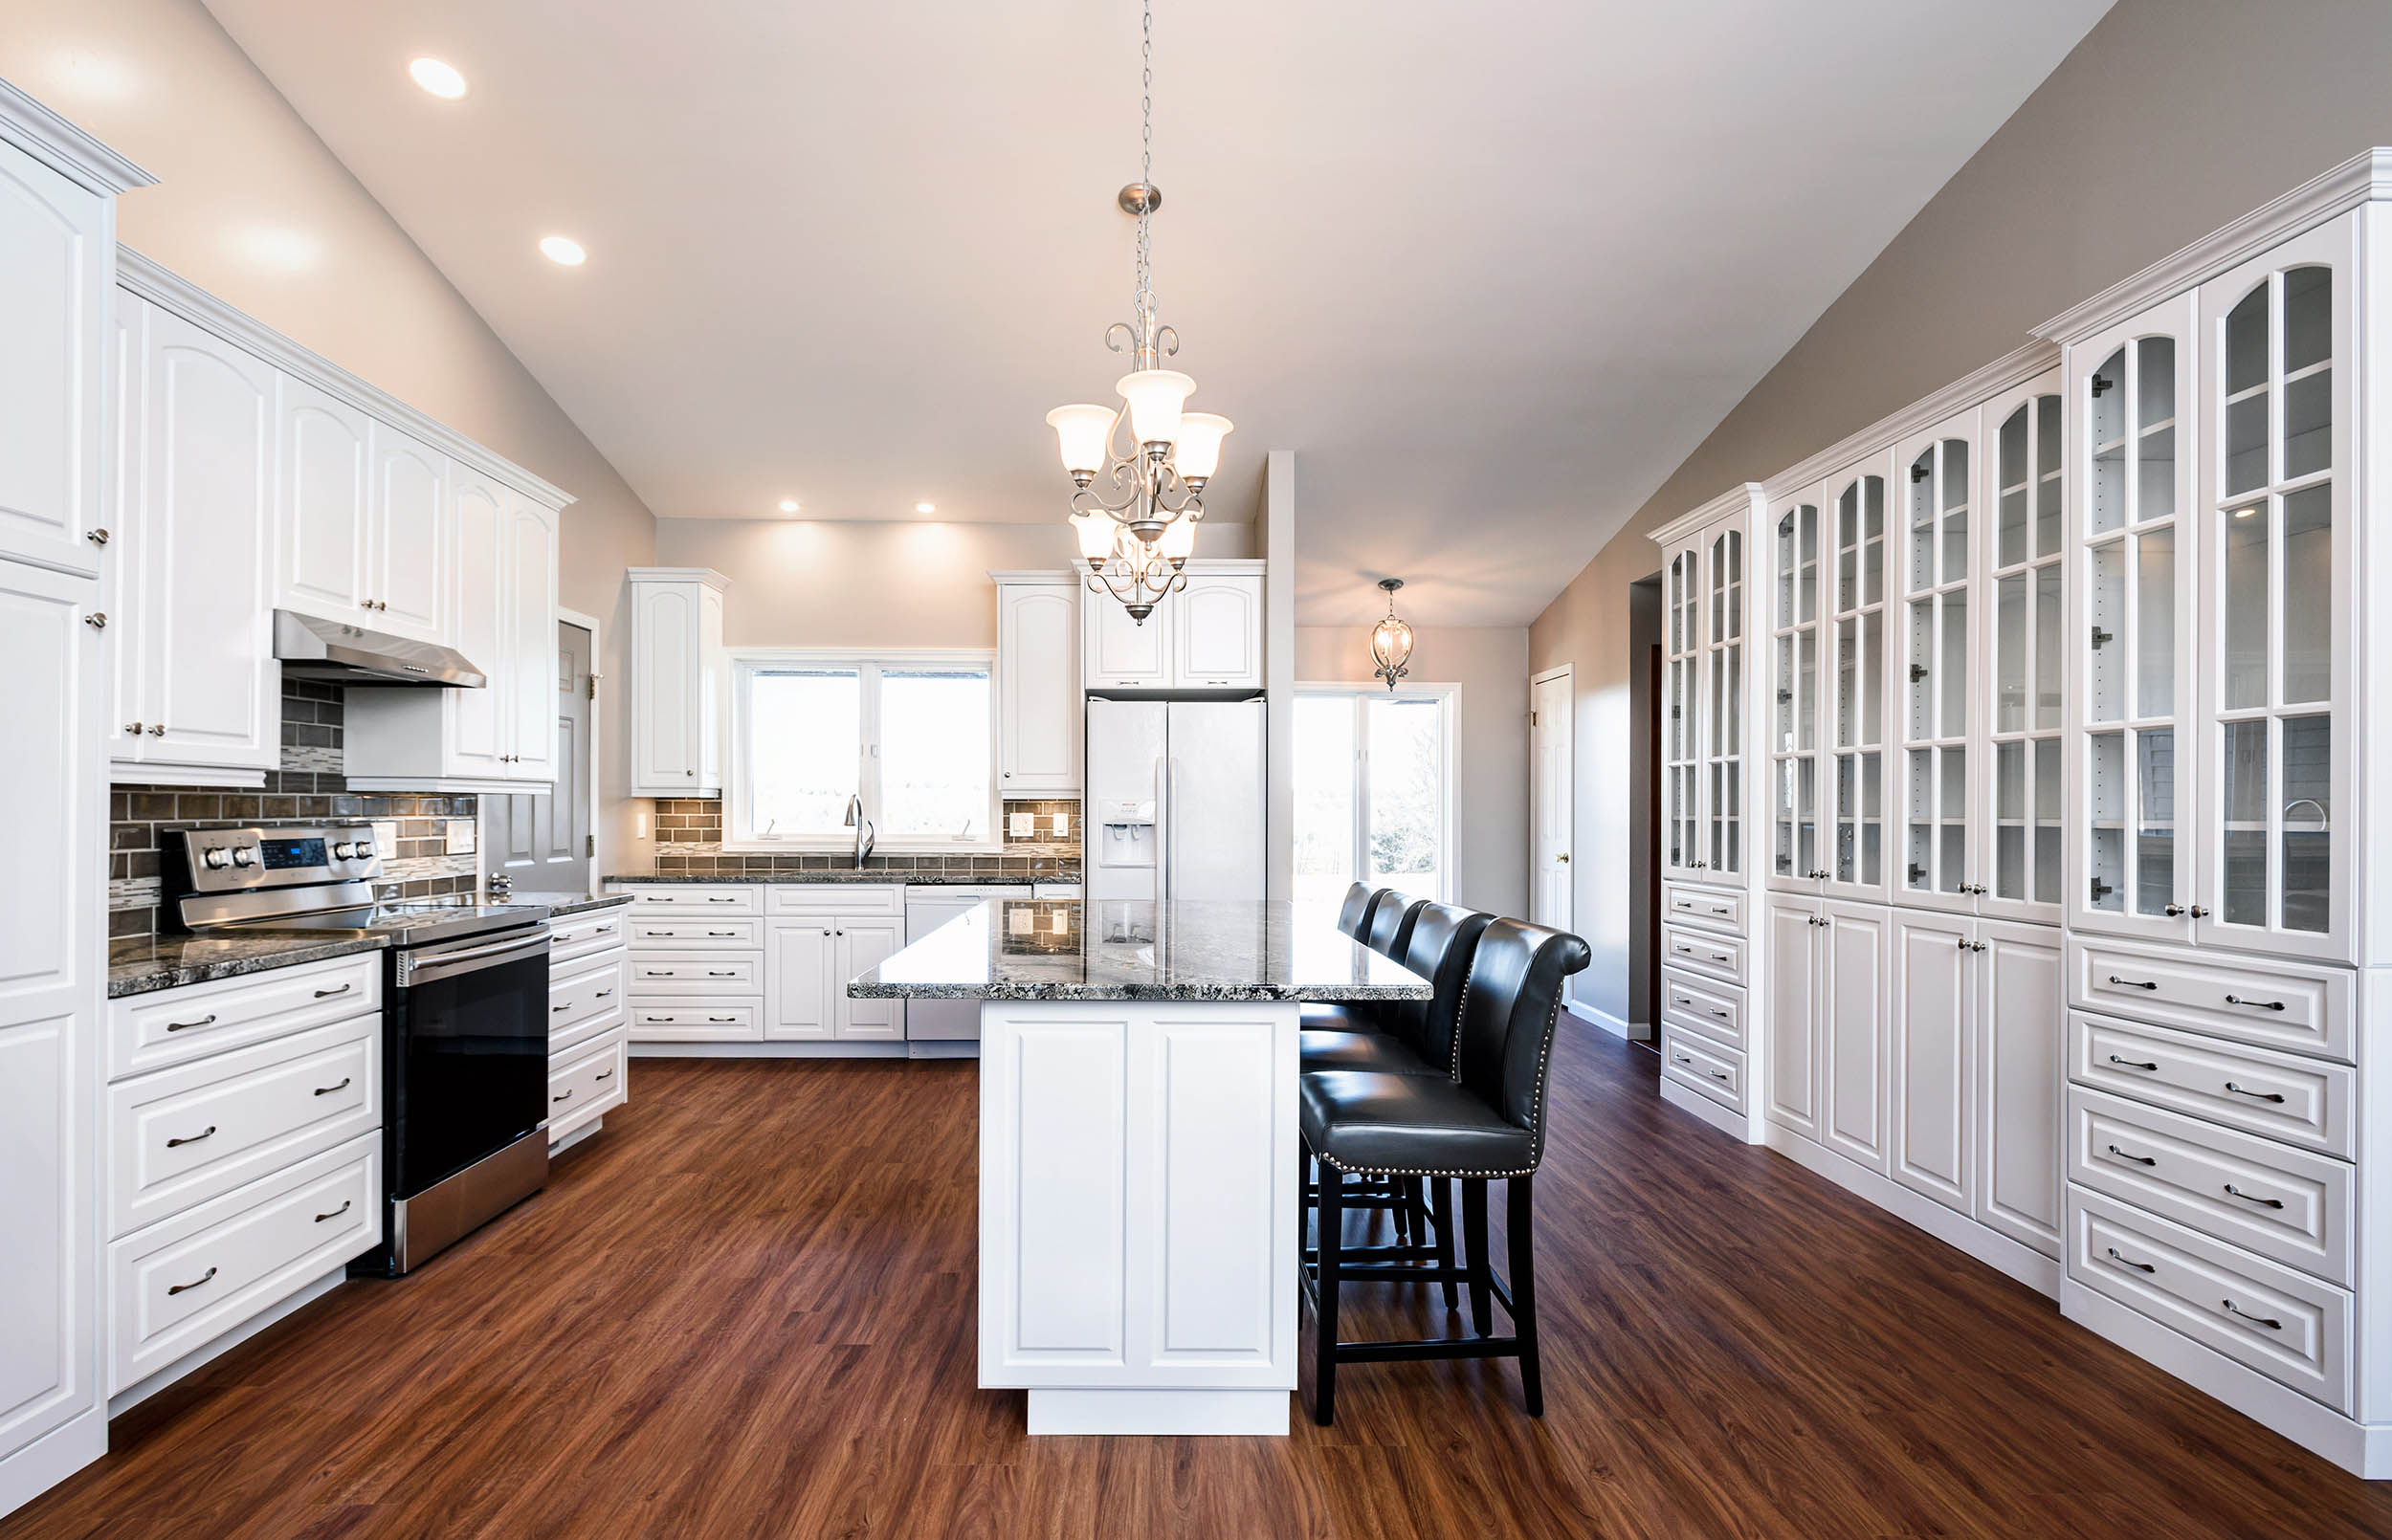 Real estate photographer Mitch Wojnarowicz residential kitchen interior photo.